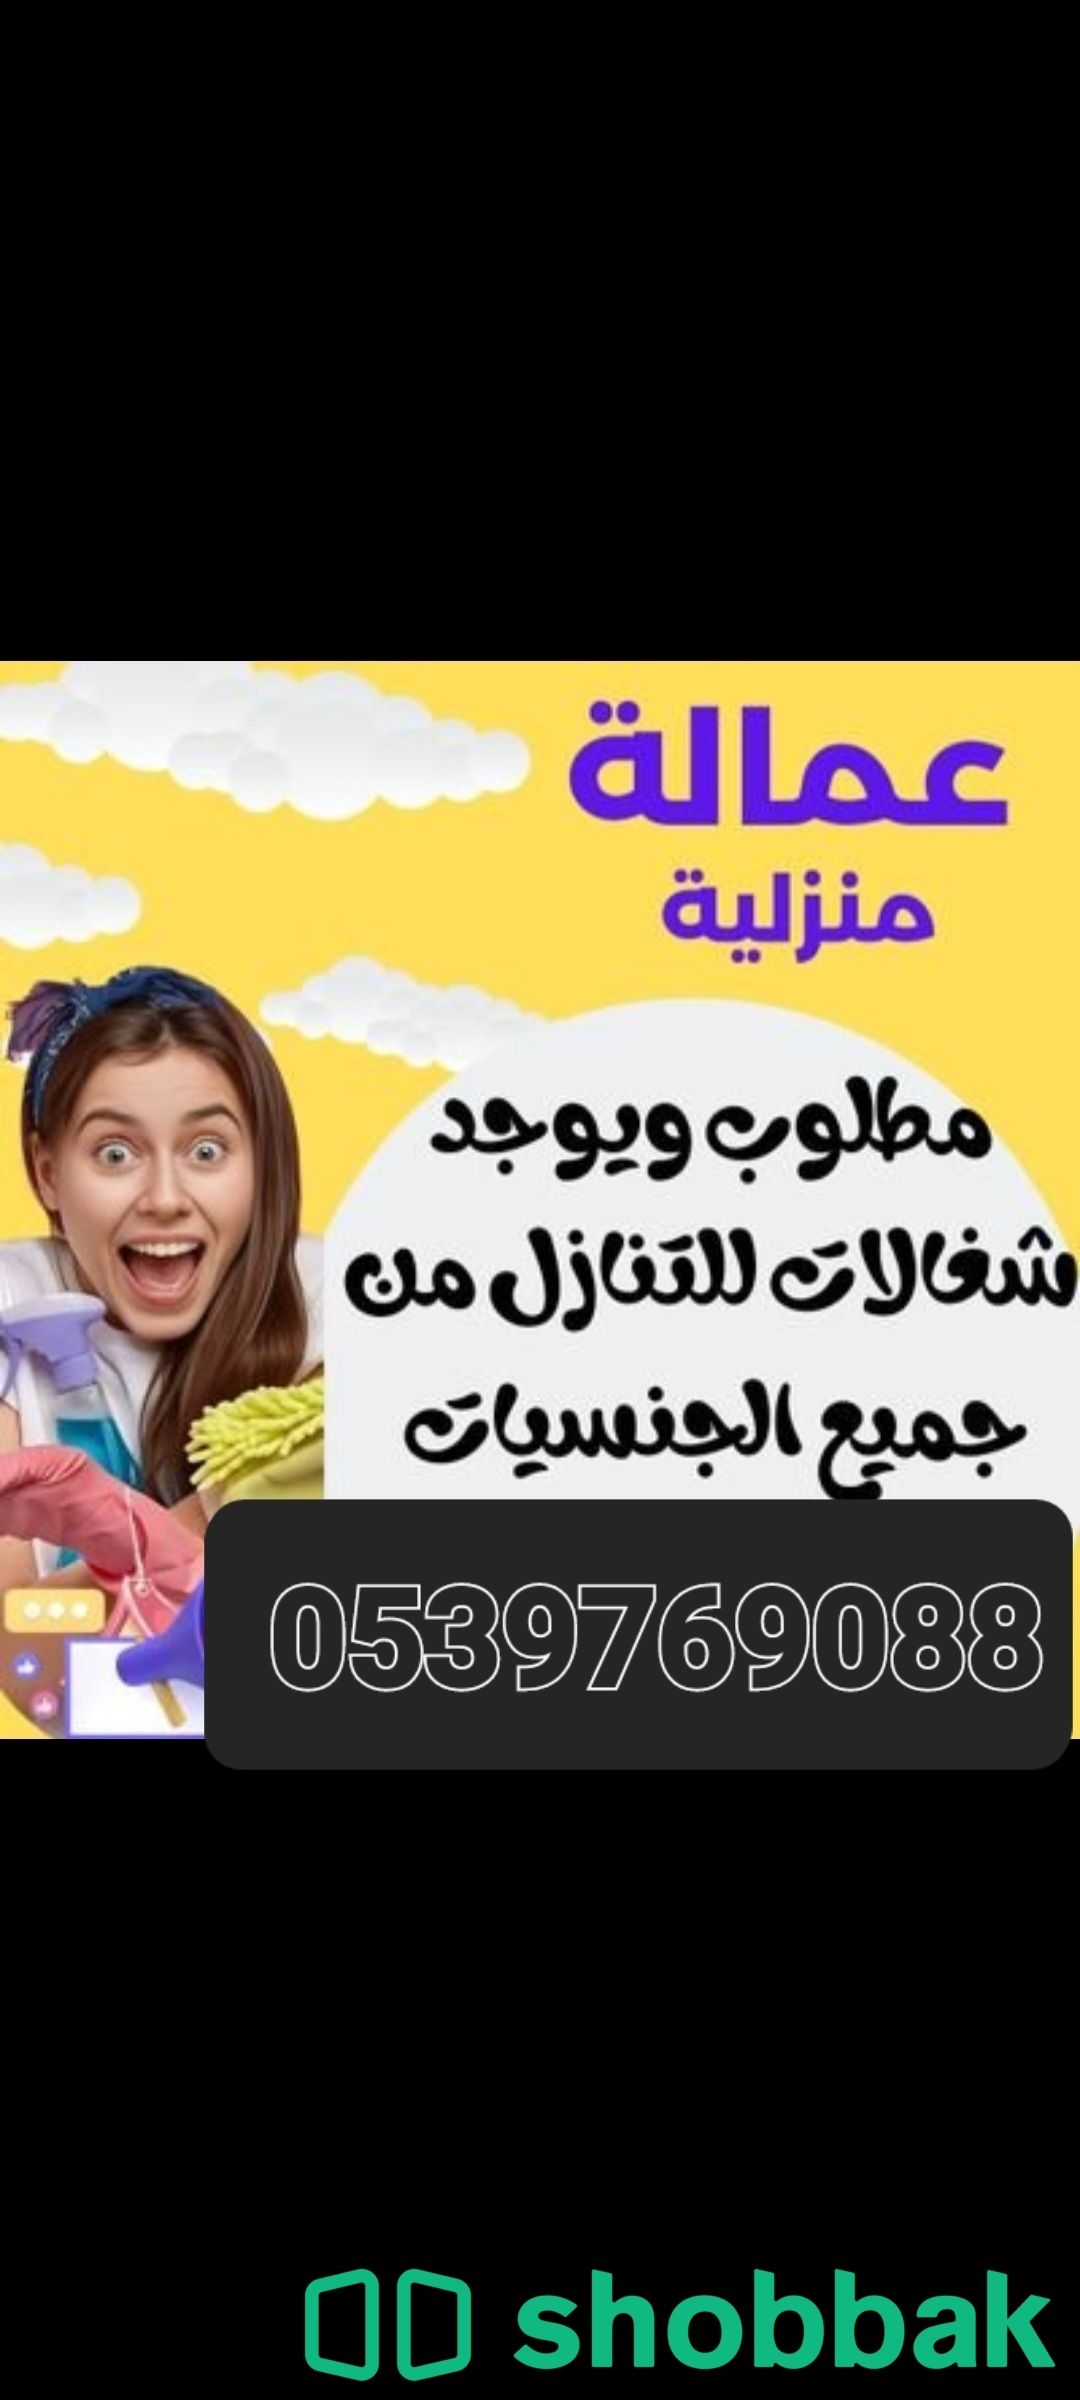 يوجد عاملات وطباخات للتنازل بافضل الاسعار 0539769088 Shobbak Saudi Arabia